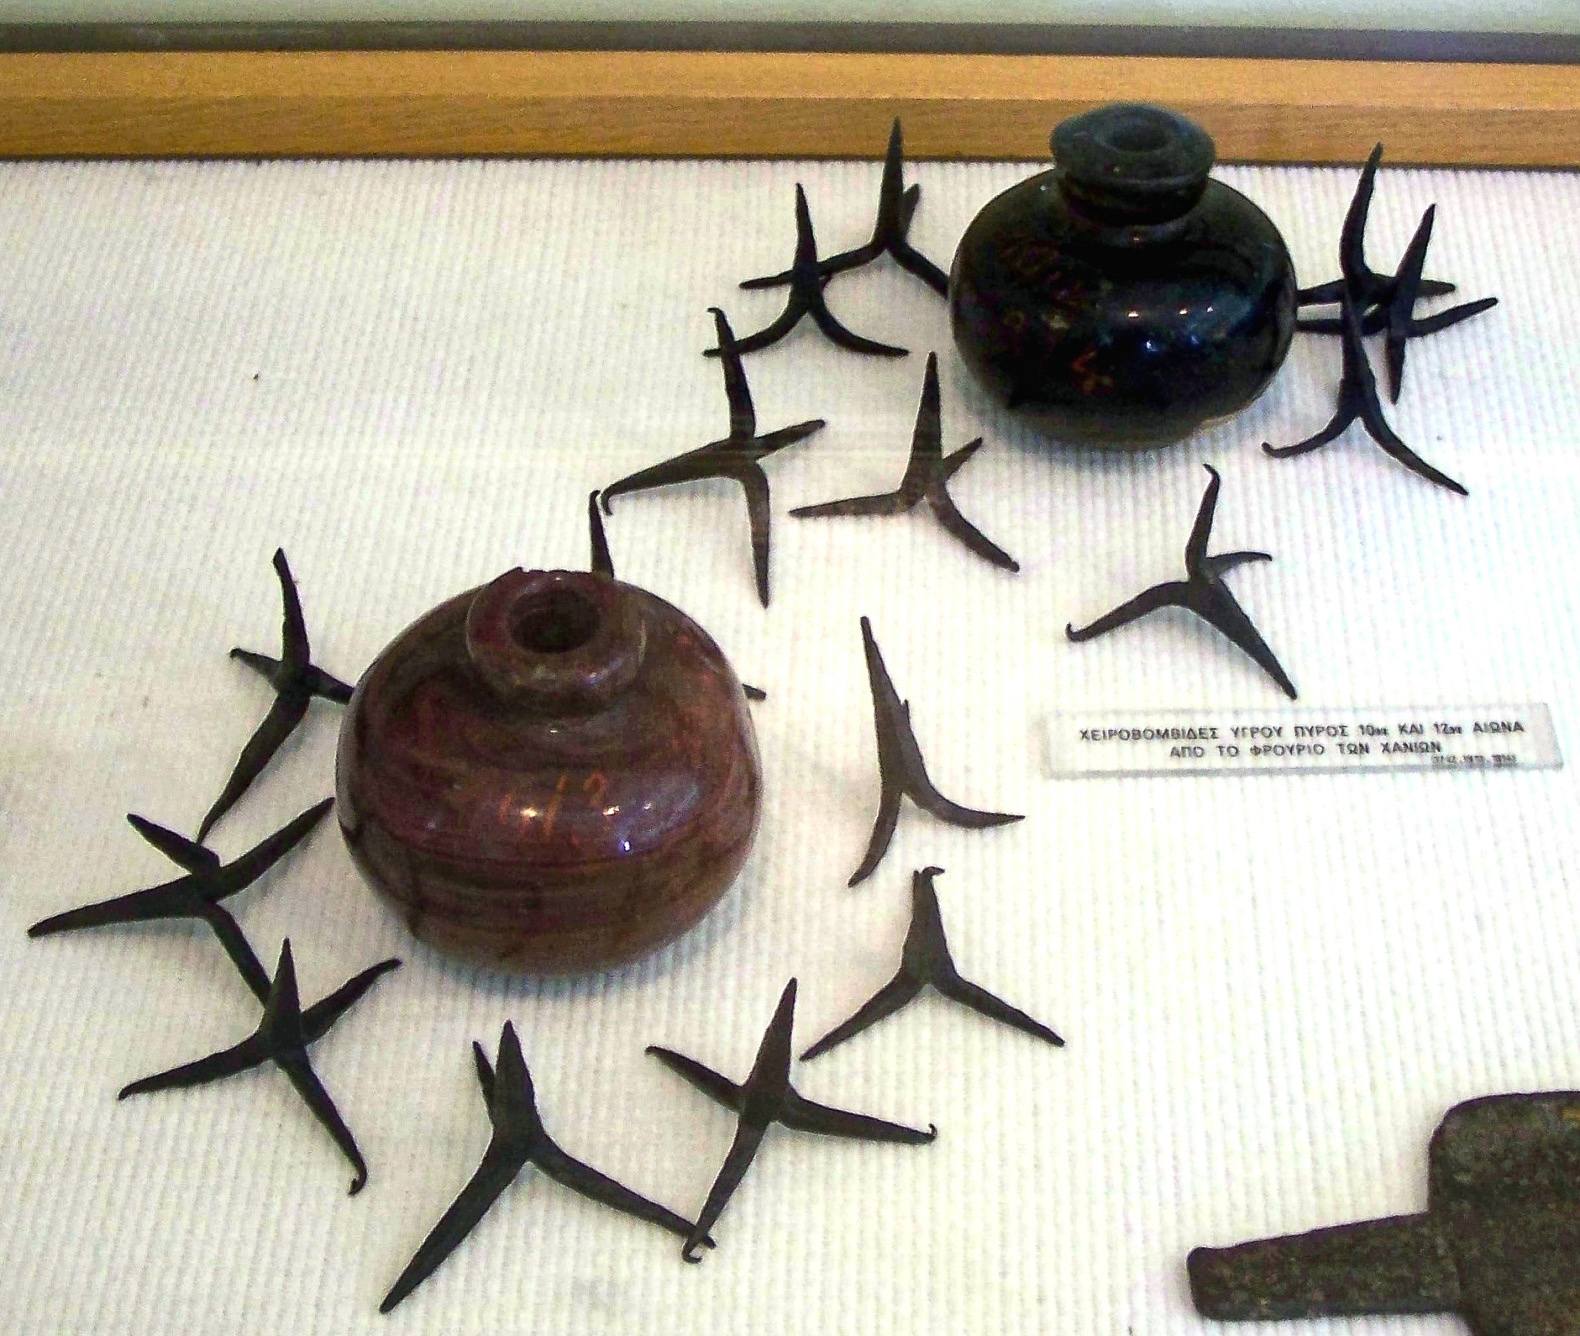 Keraminės granatos, užpildytos graikiška ugnimi, apsuptos kaltropų, 10–12 a., Nacionalinis istorijos muziejus, Atėnai, Graikija